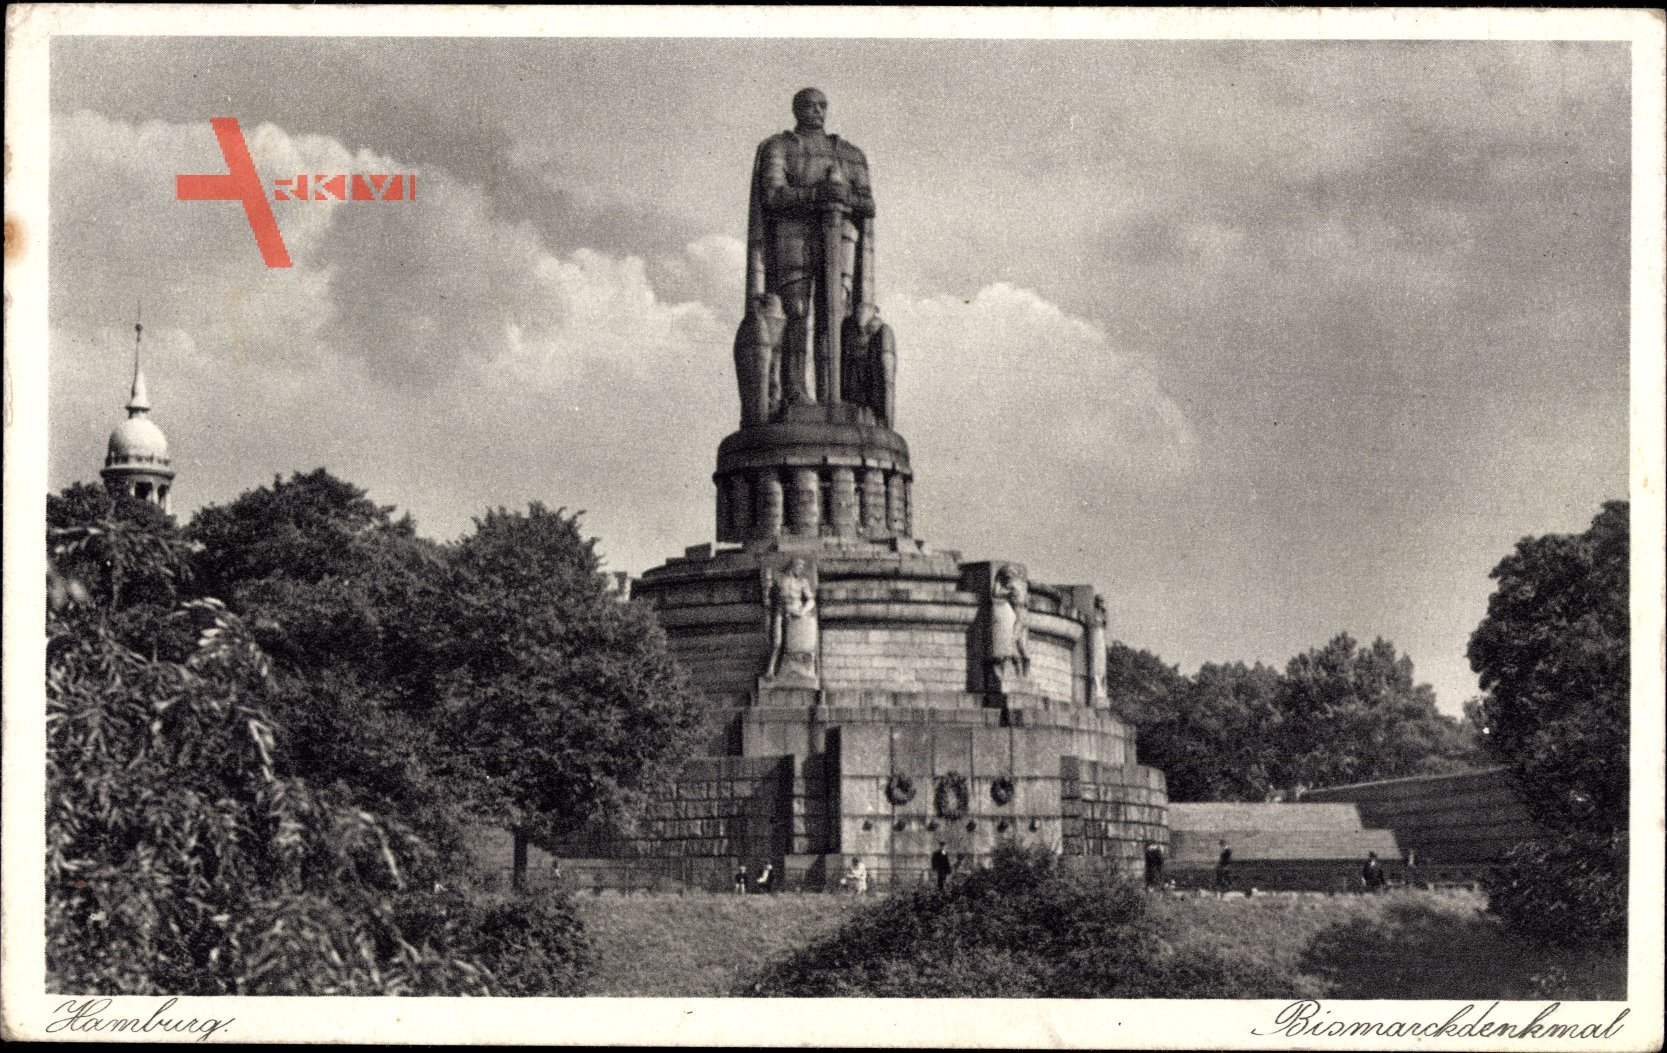 Hamburg St. Pauli, Blick auf das Bismarckdenkmal